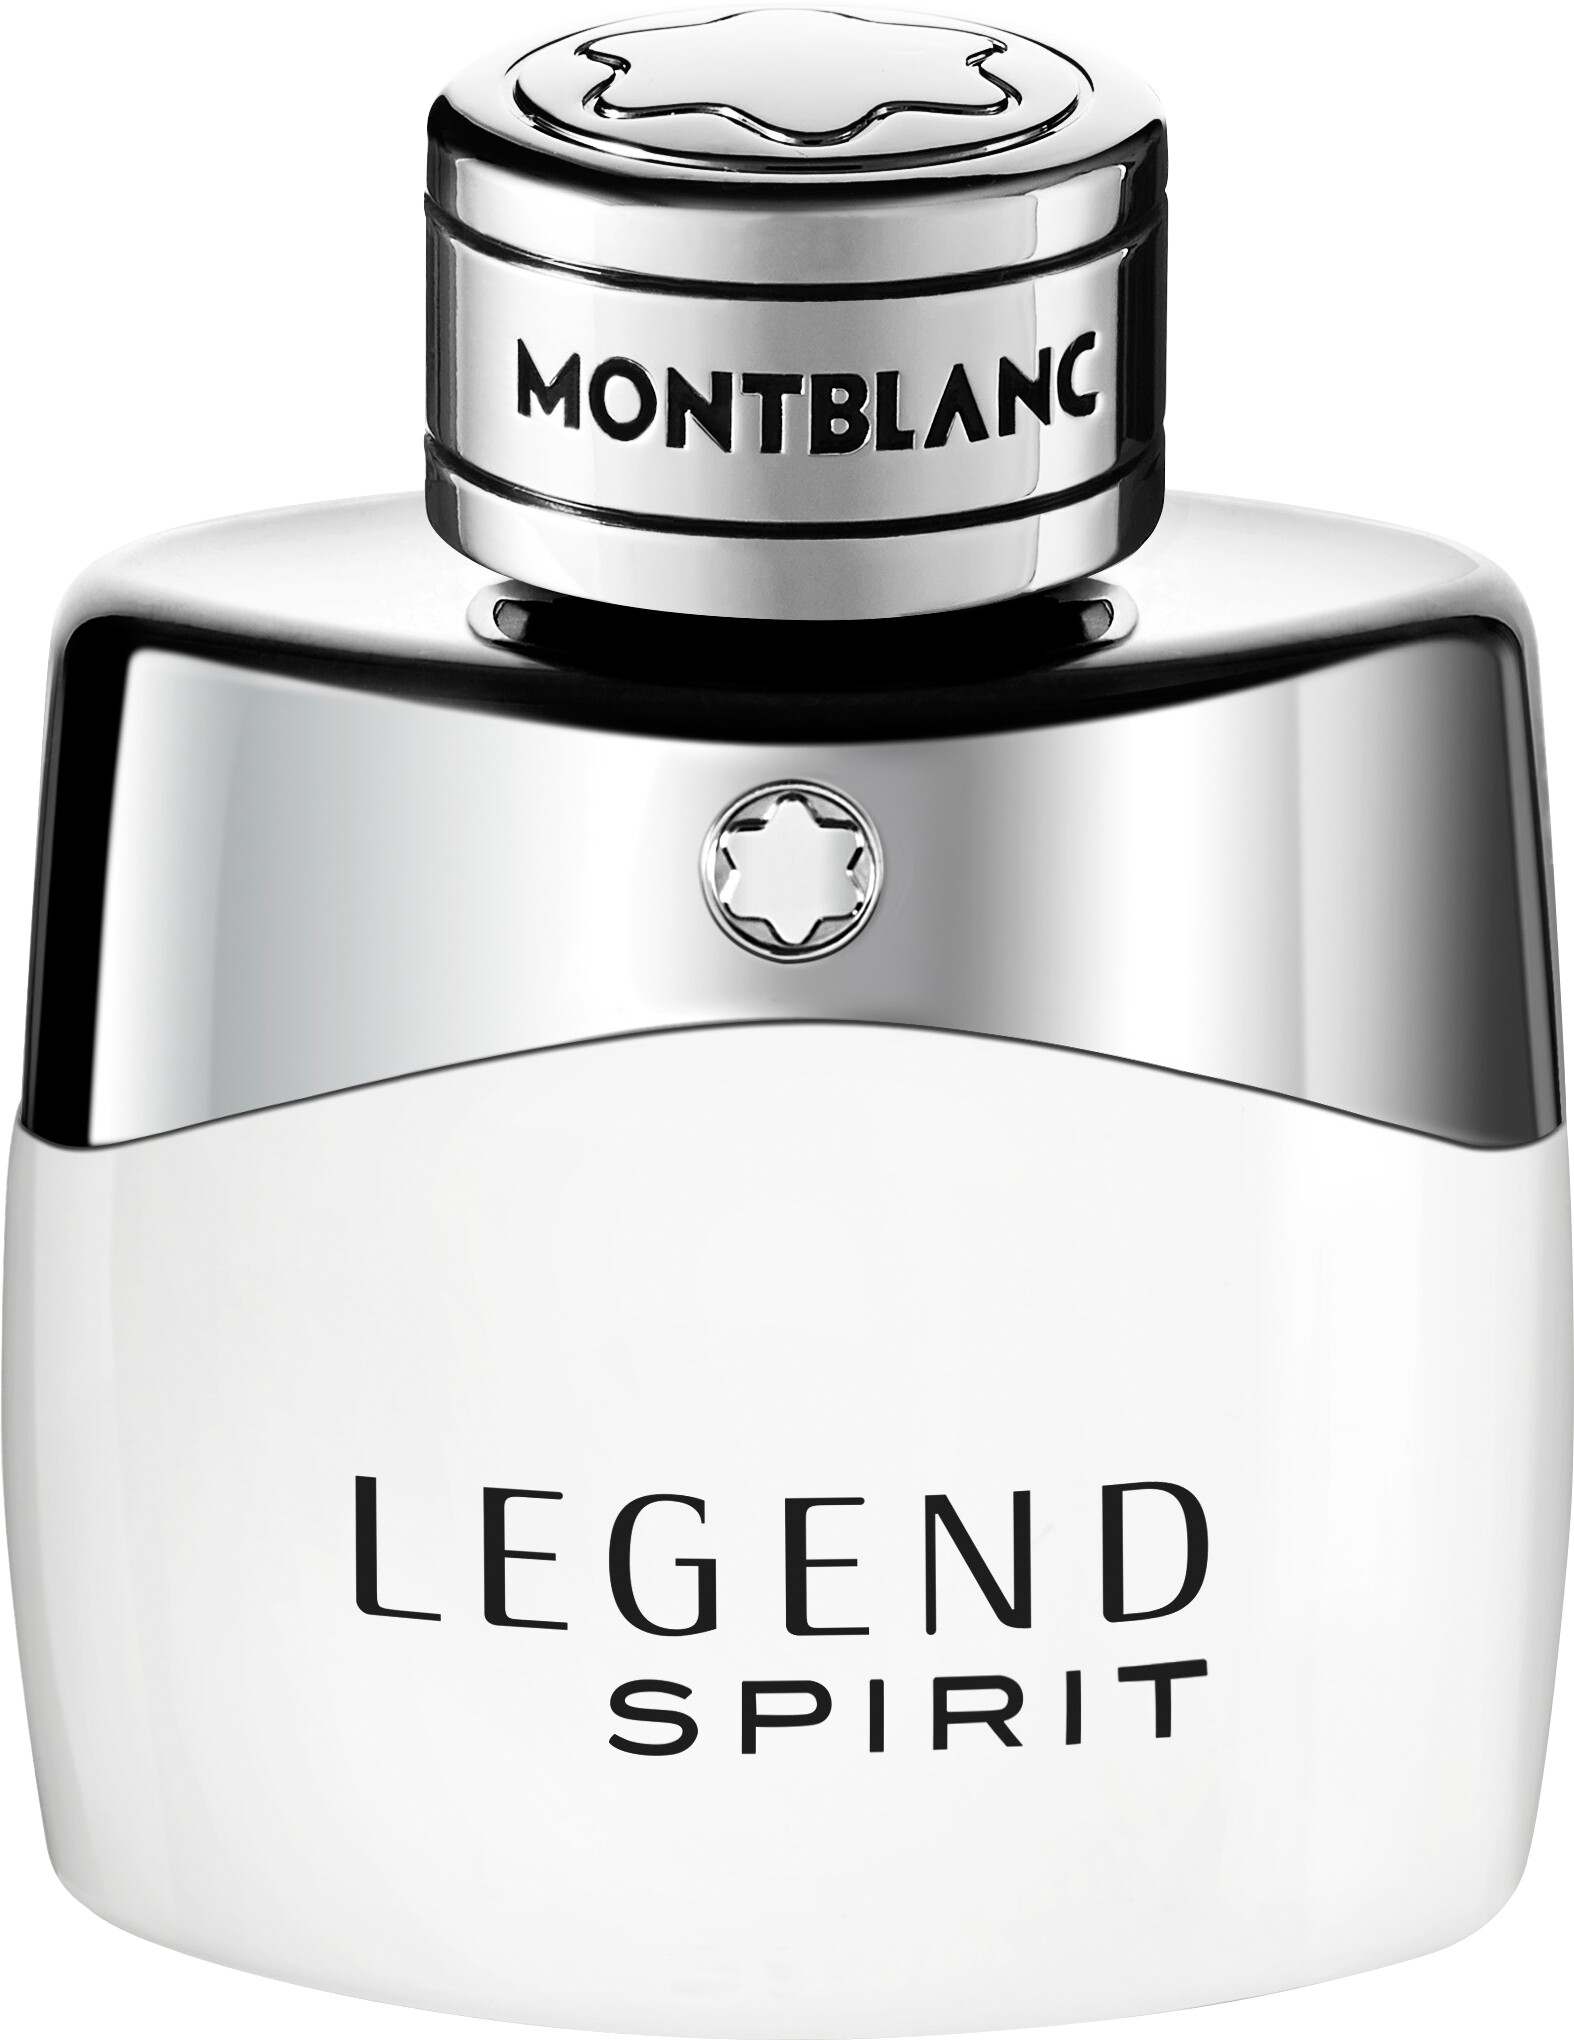 Montblanc Legend Spirit Eau de Toilette Spray 30ml